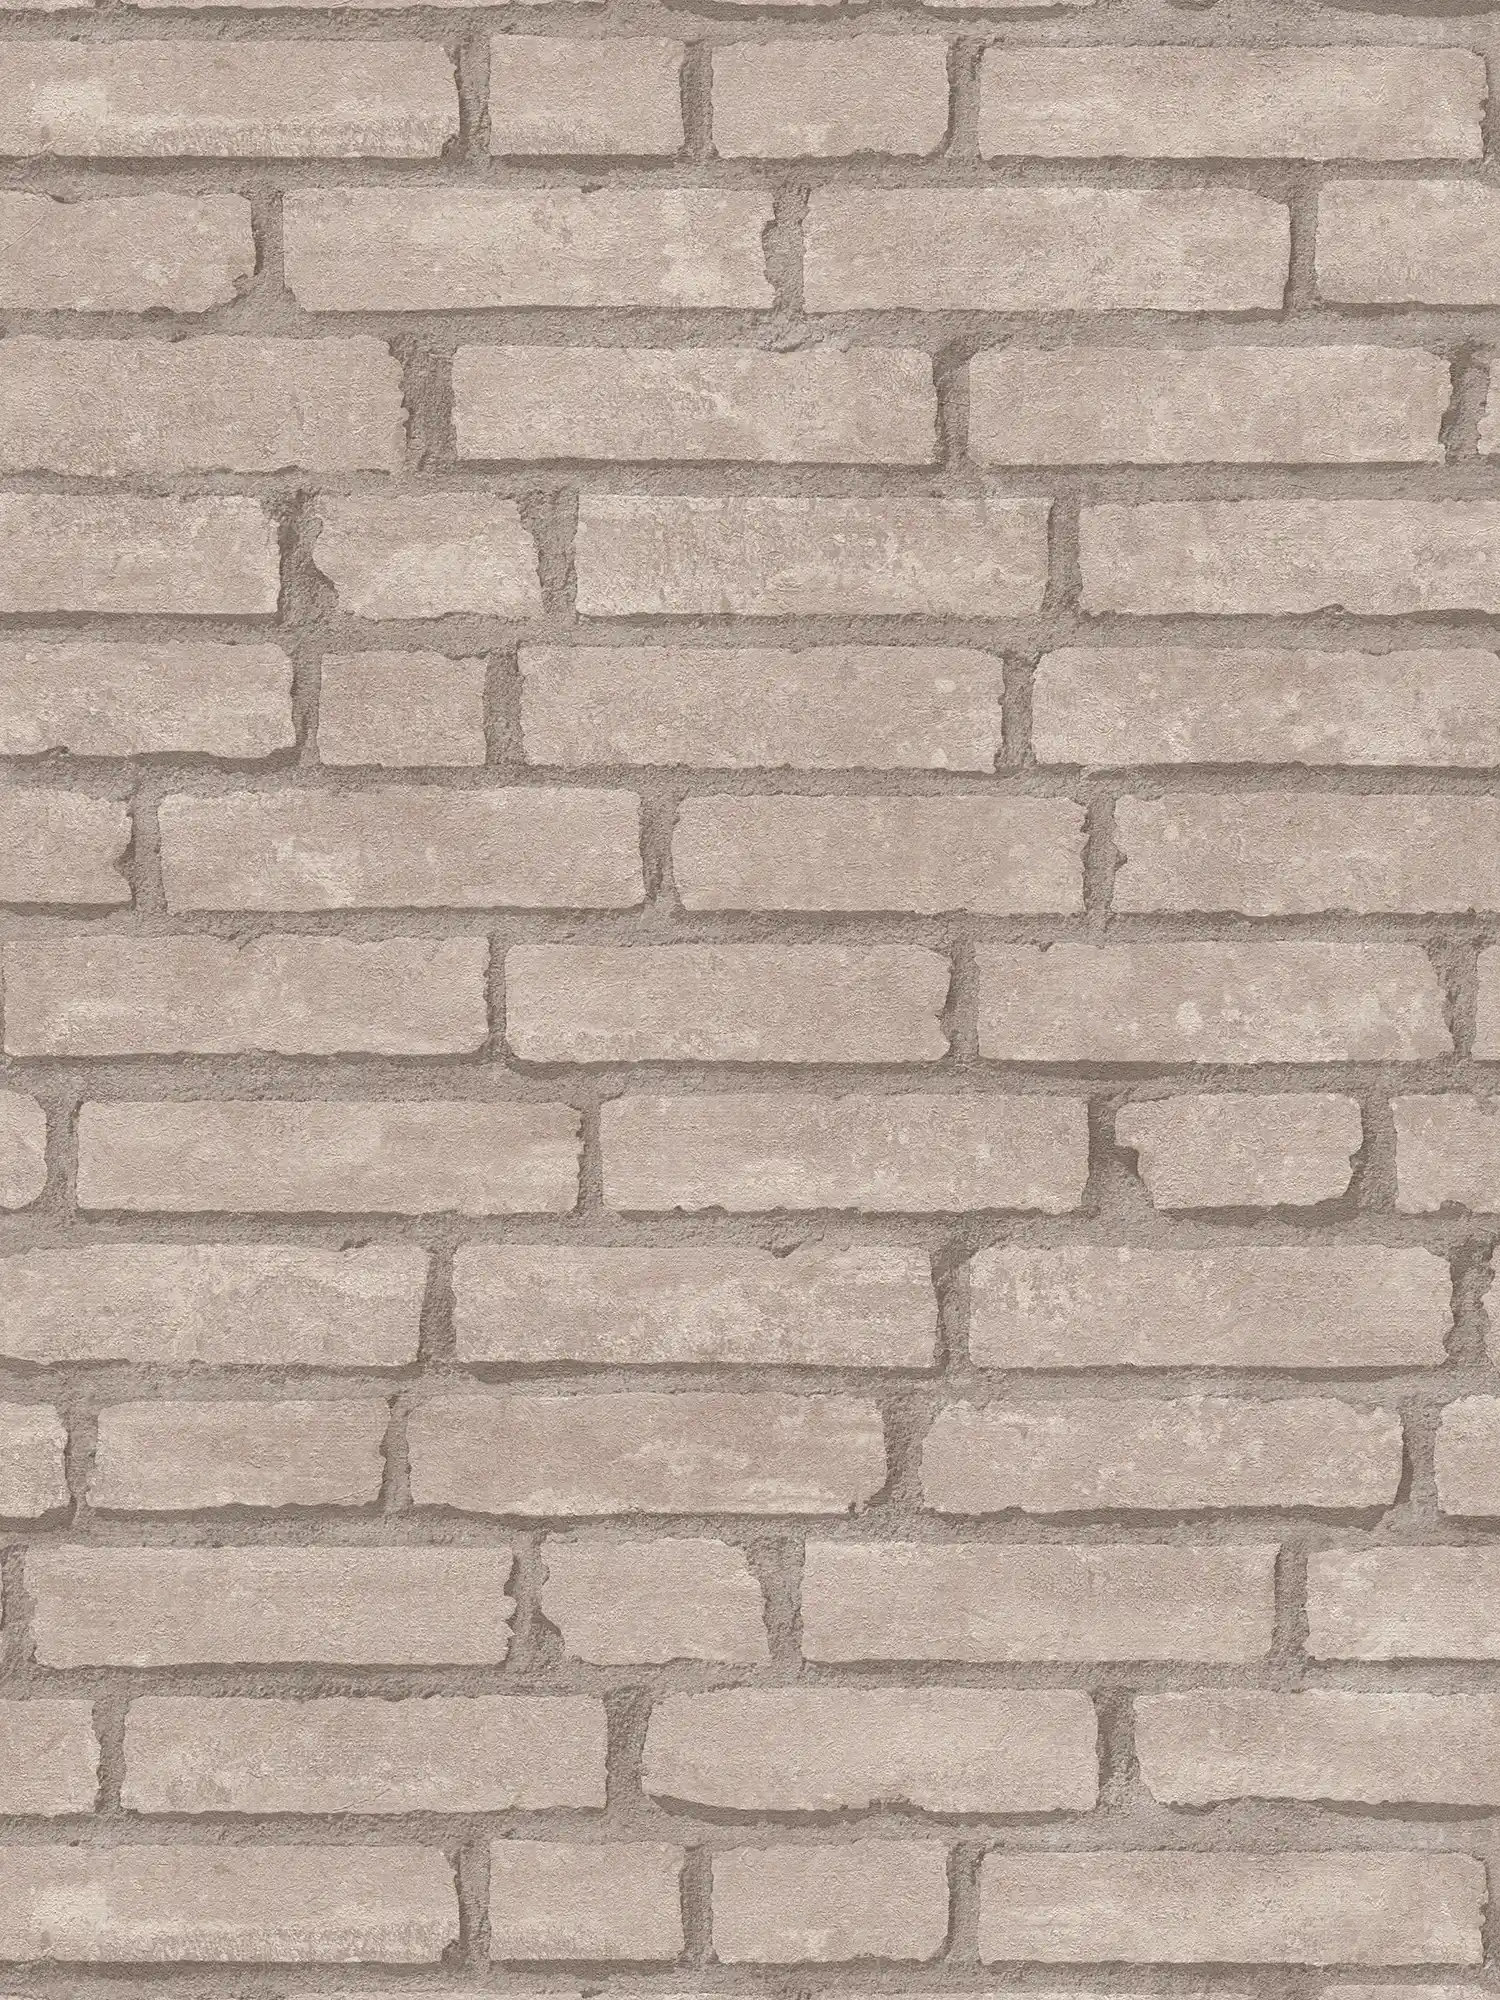         Steintapete braunes Ziegel-Mauerwerk – Grau, Beige
    